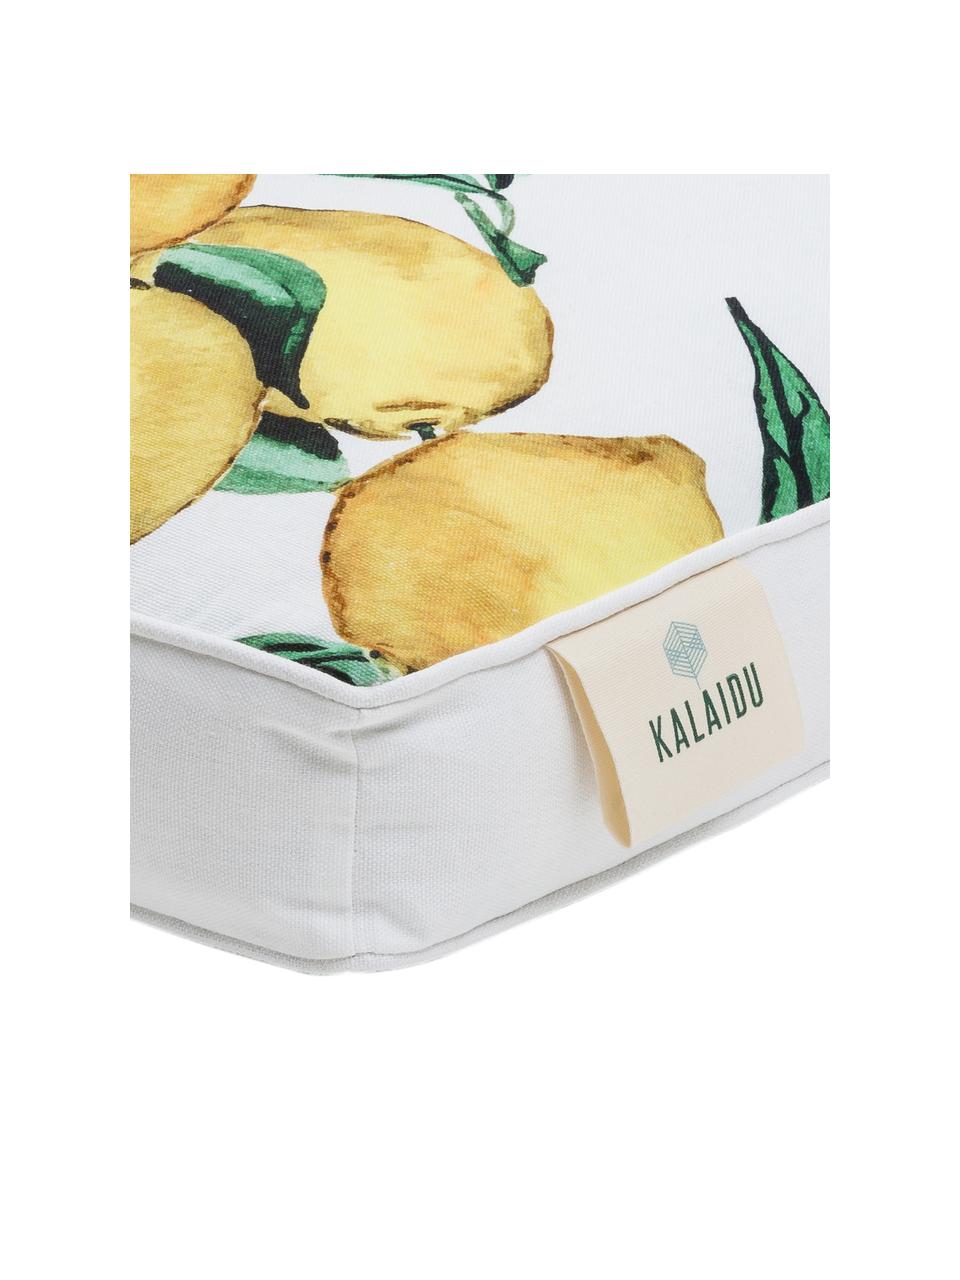 Hohes Sitzkissen Citrus aus Baumwolle, Bezug: 100% Baumwolle, Gelb, Grün, Weiß, B 40 x L 40 cm